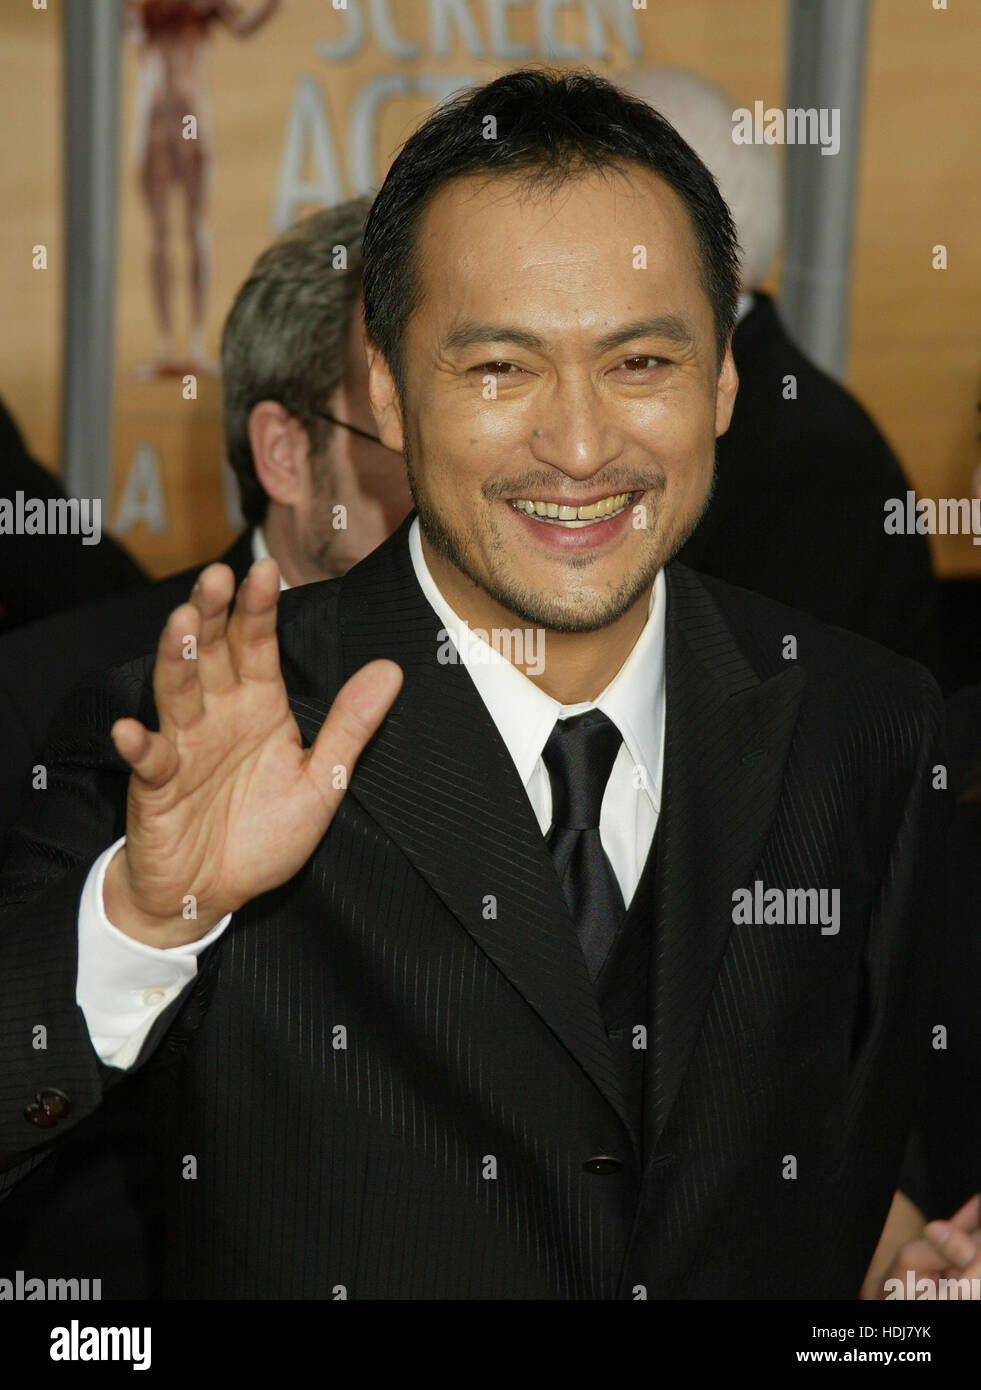 Ken Watanabe arrive à la Screen Actors Guild Awards à Los Angeles, Californie le 22 février 2004. Crédit photo : Francis Specker Banque D'Images